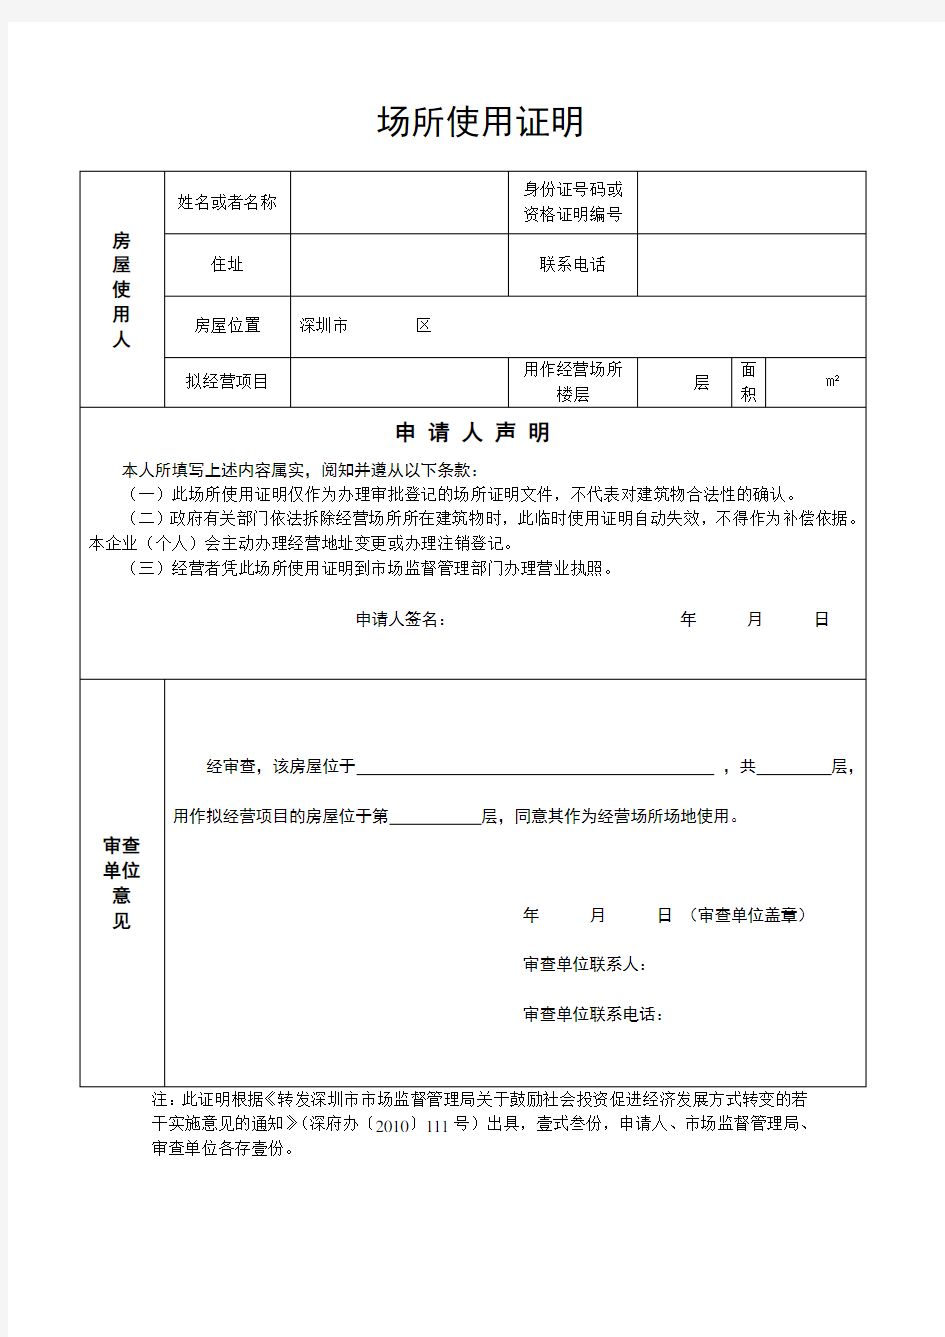 深圳街道办开具的标准版场地使用证明(请双面打印)